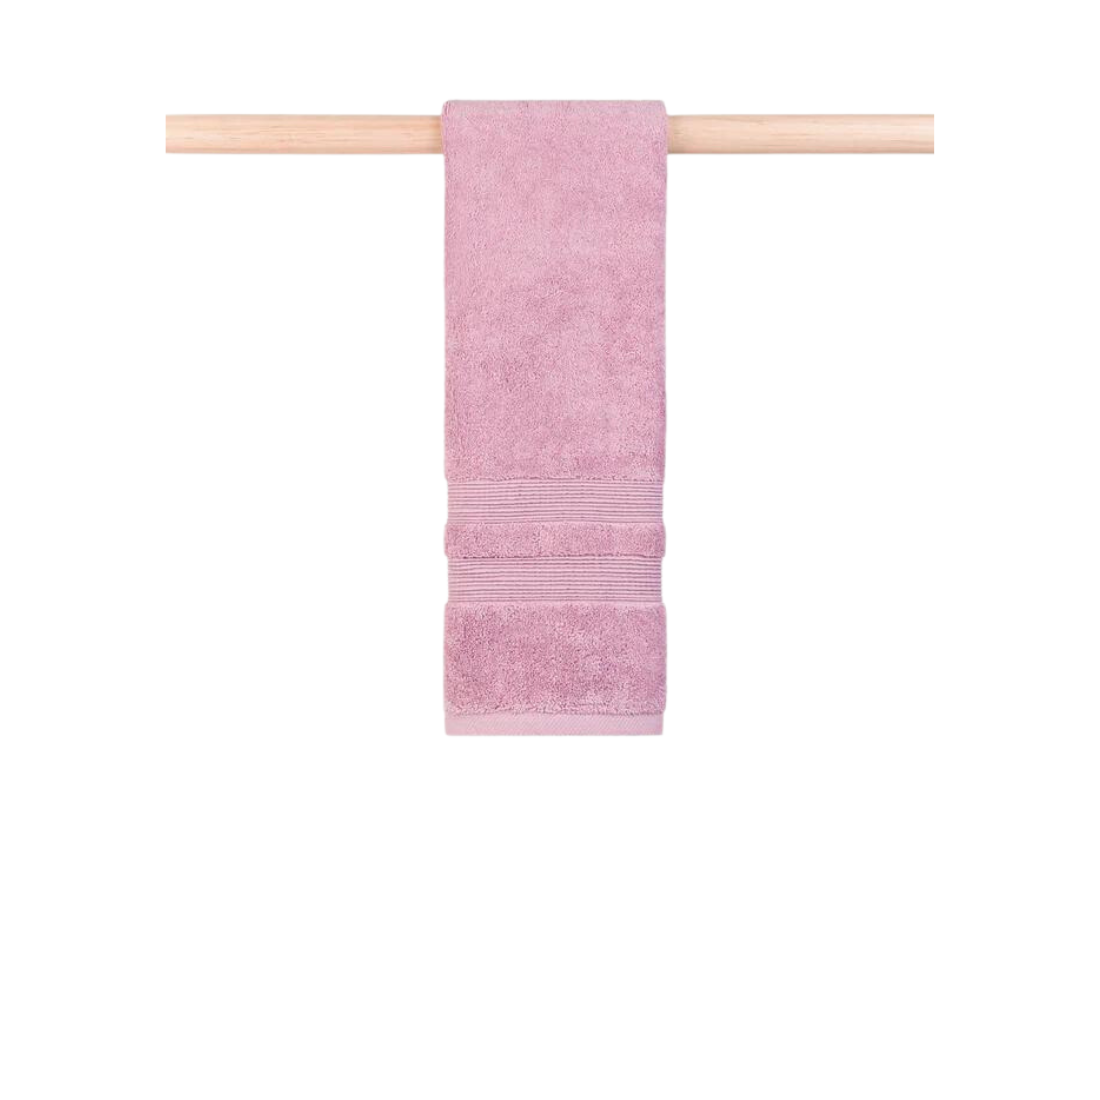 Billede af Torres Novas Håndklæde "Elegance" gammel-rosa, 50 x 100 cm